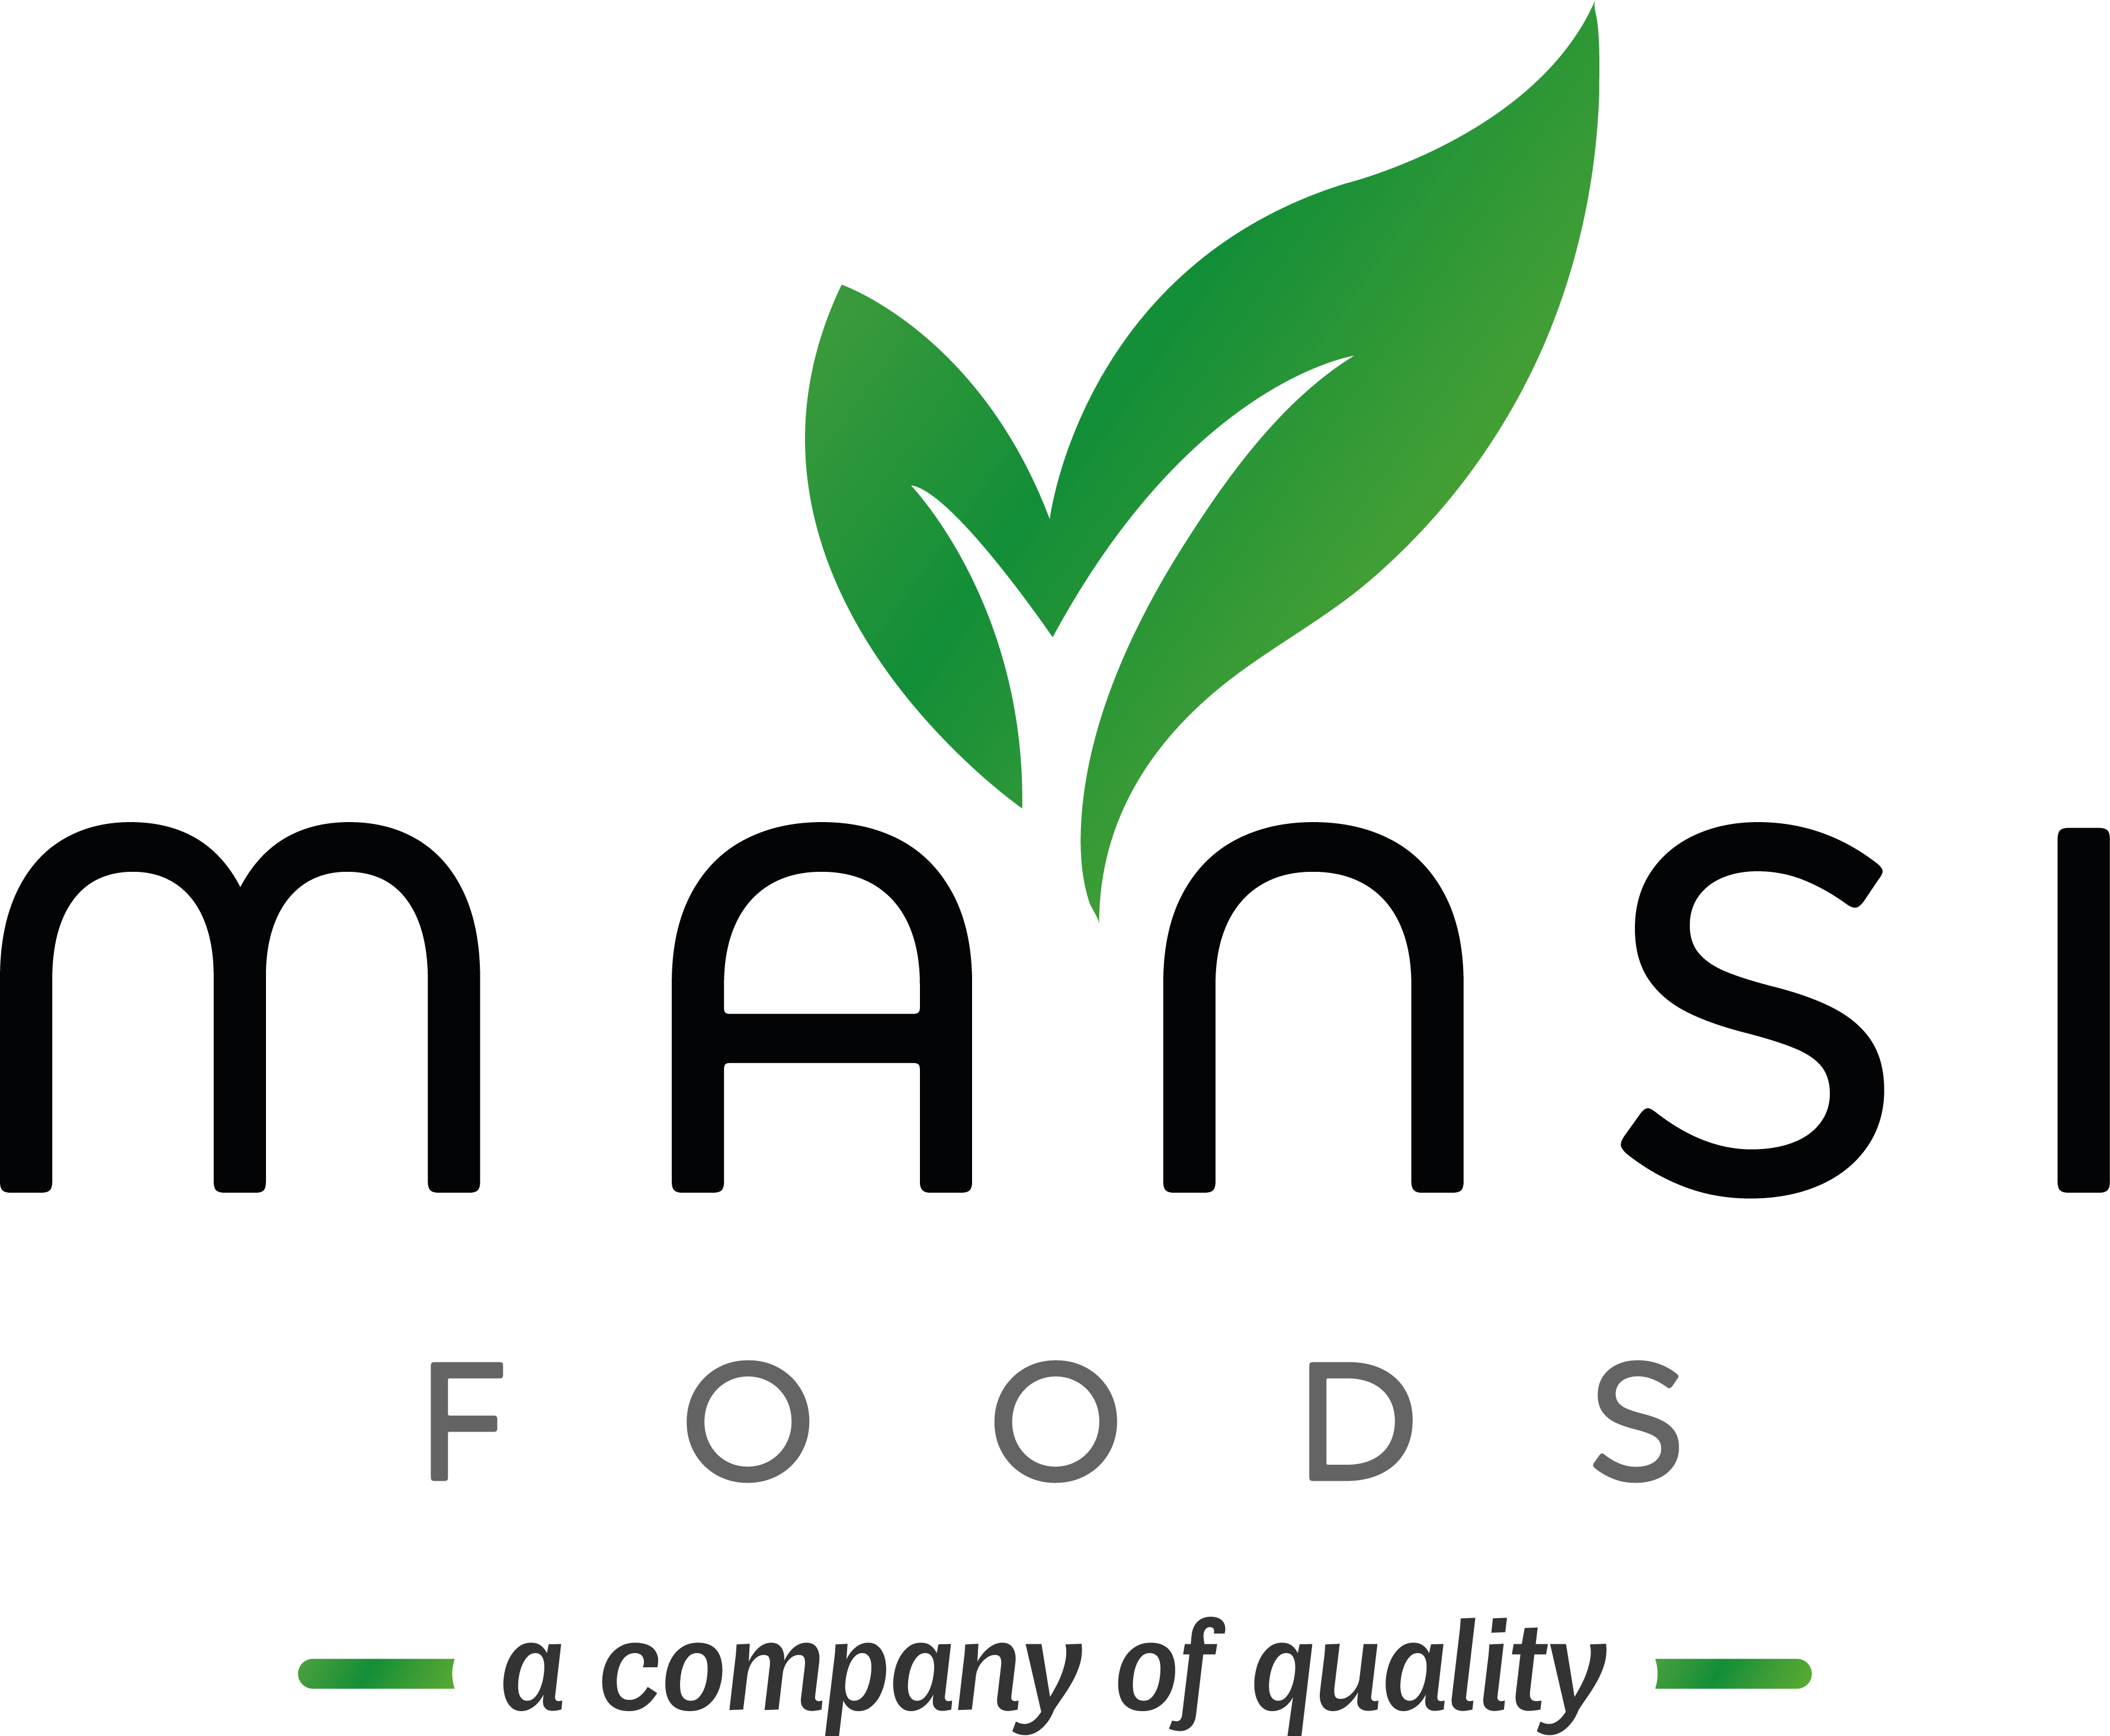 Mansi Foods